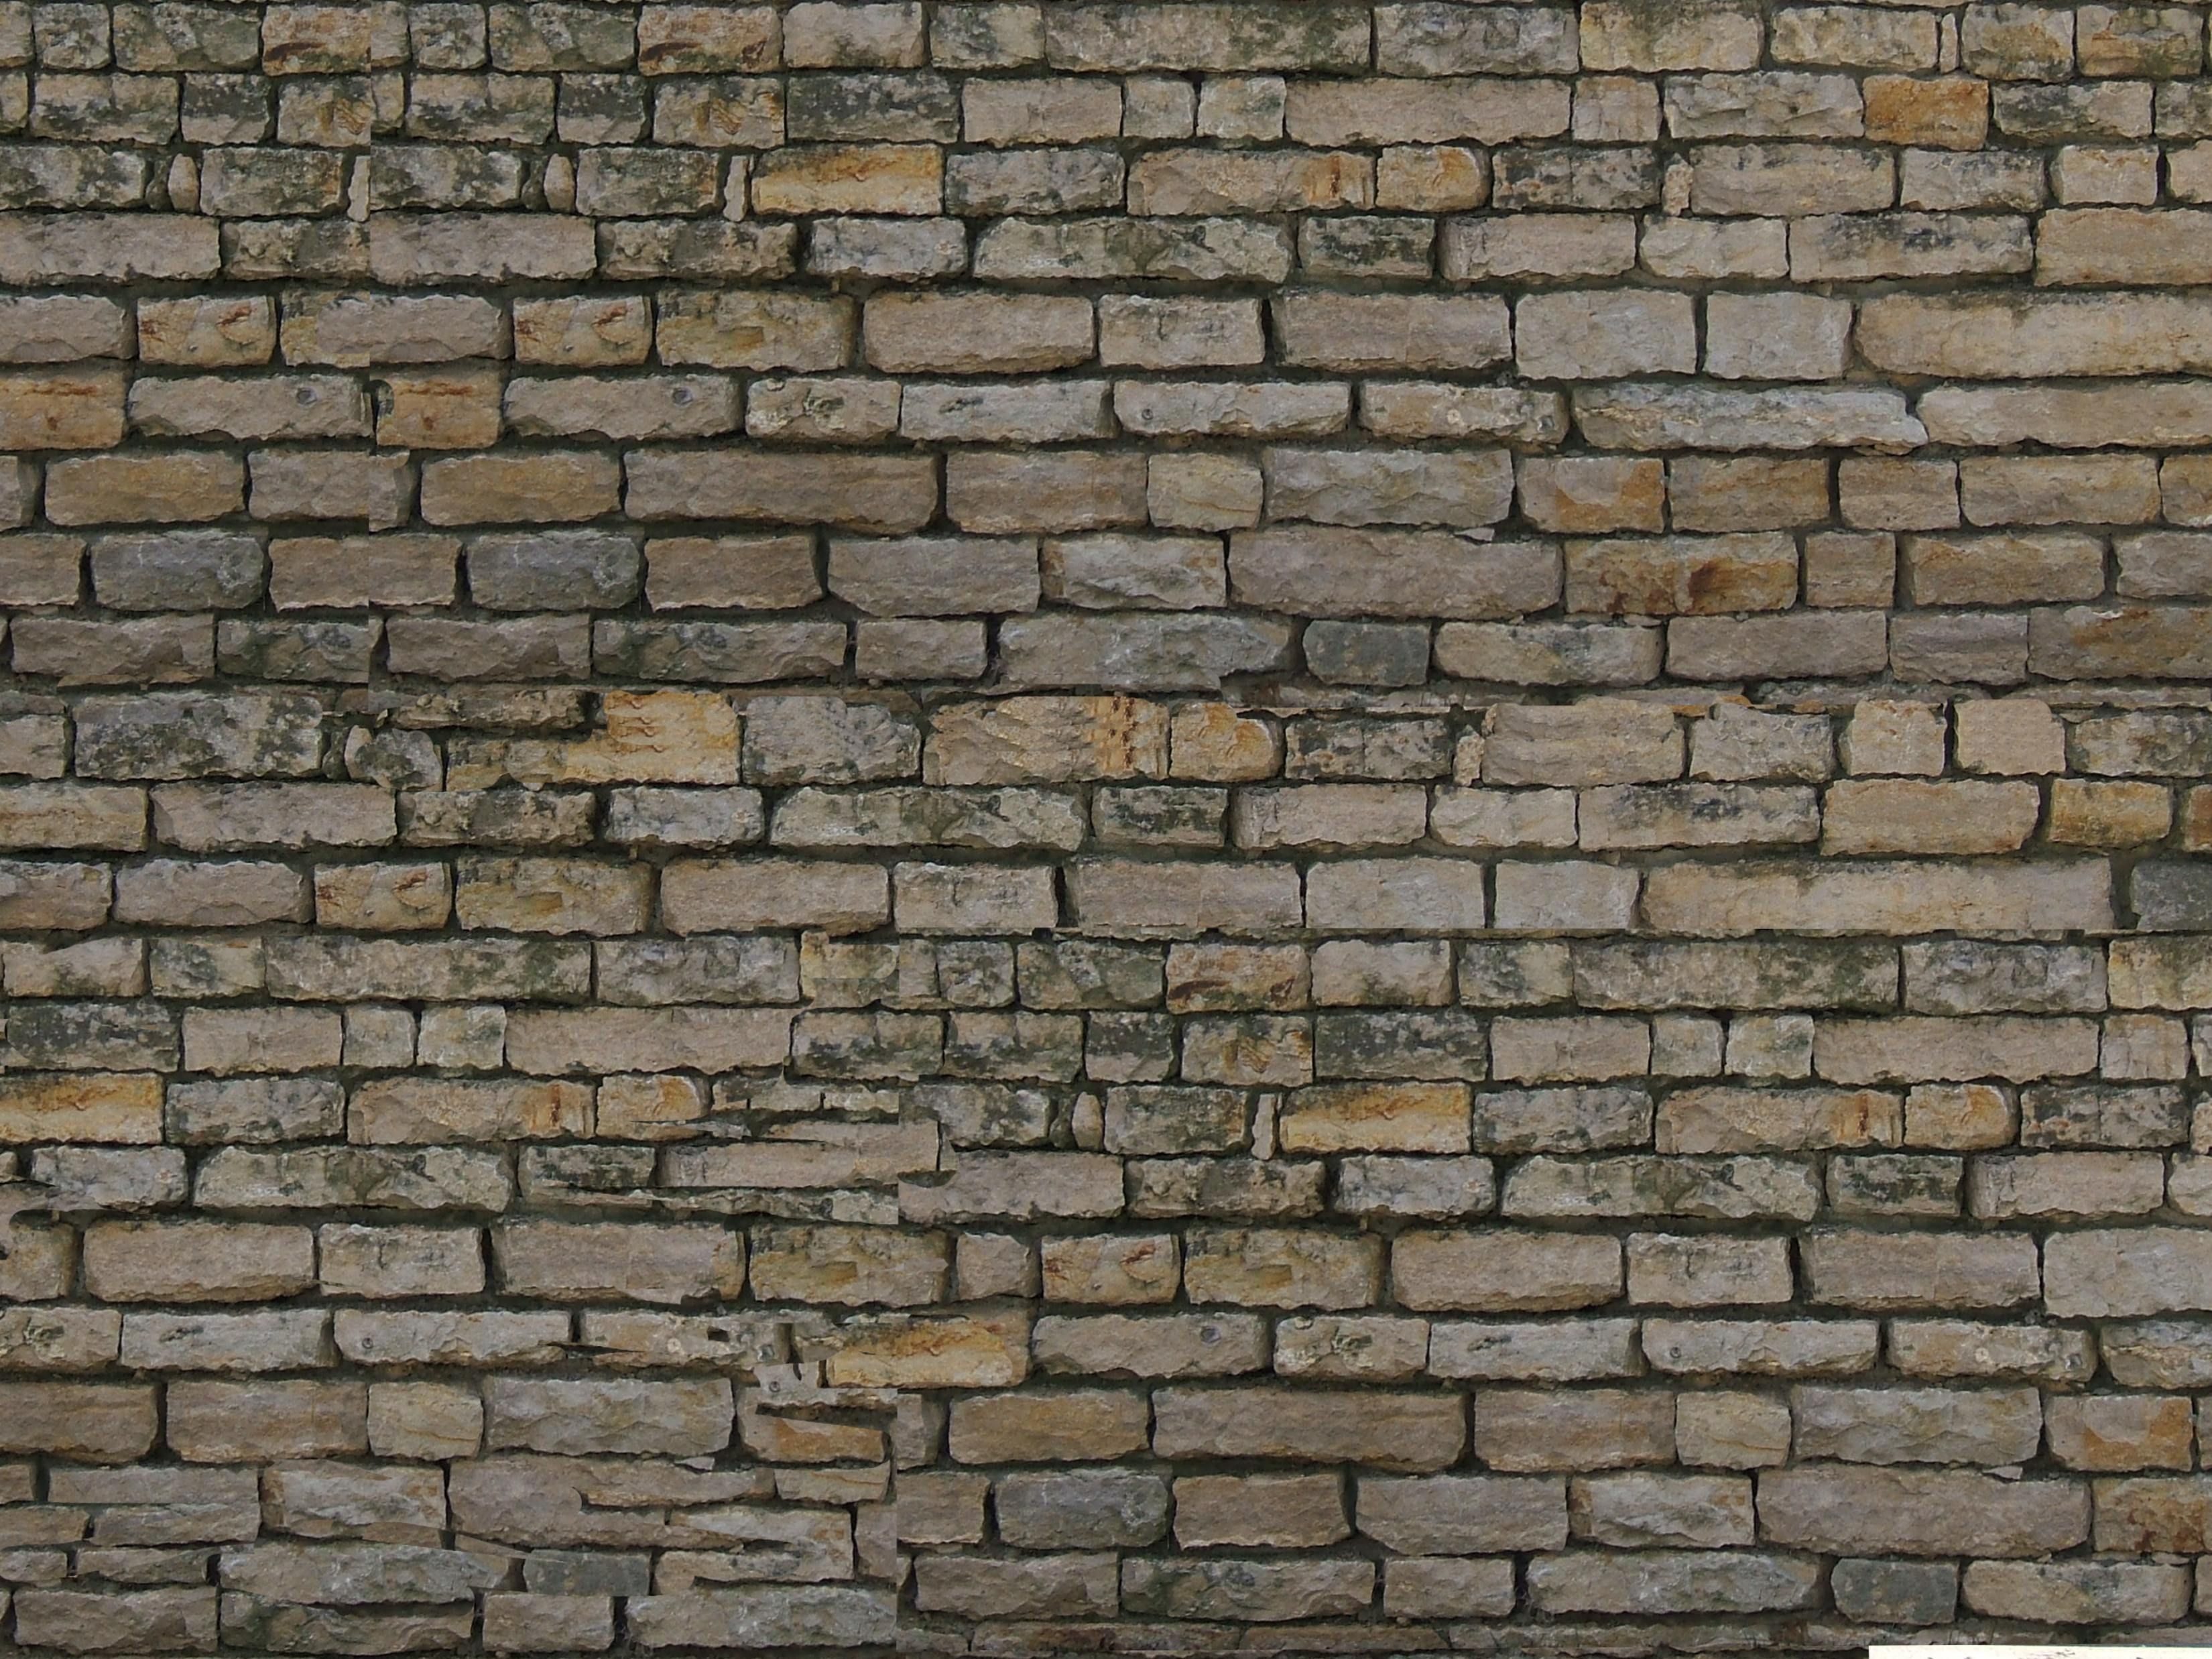 wallpaper sheets for walls,brickwork,brick,wall,stone wall,building